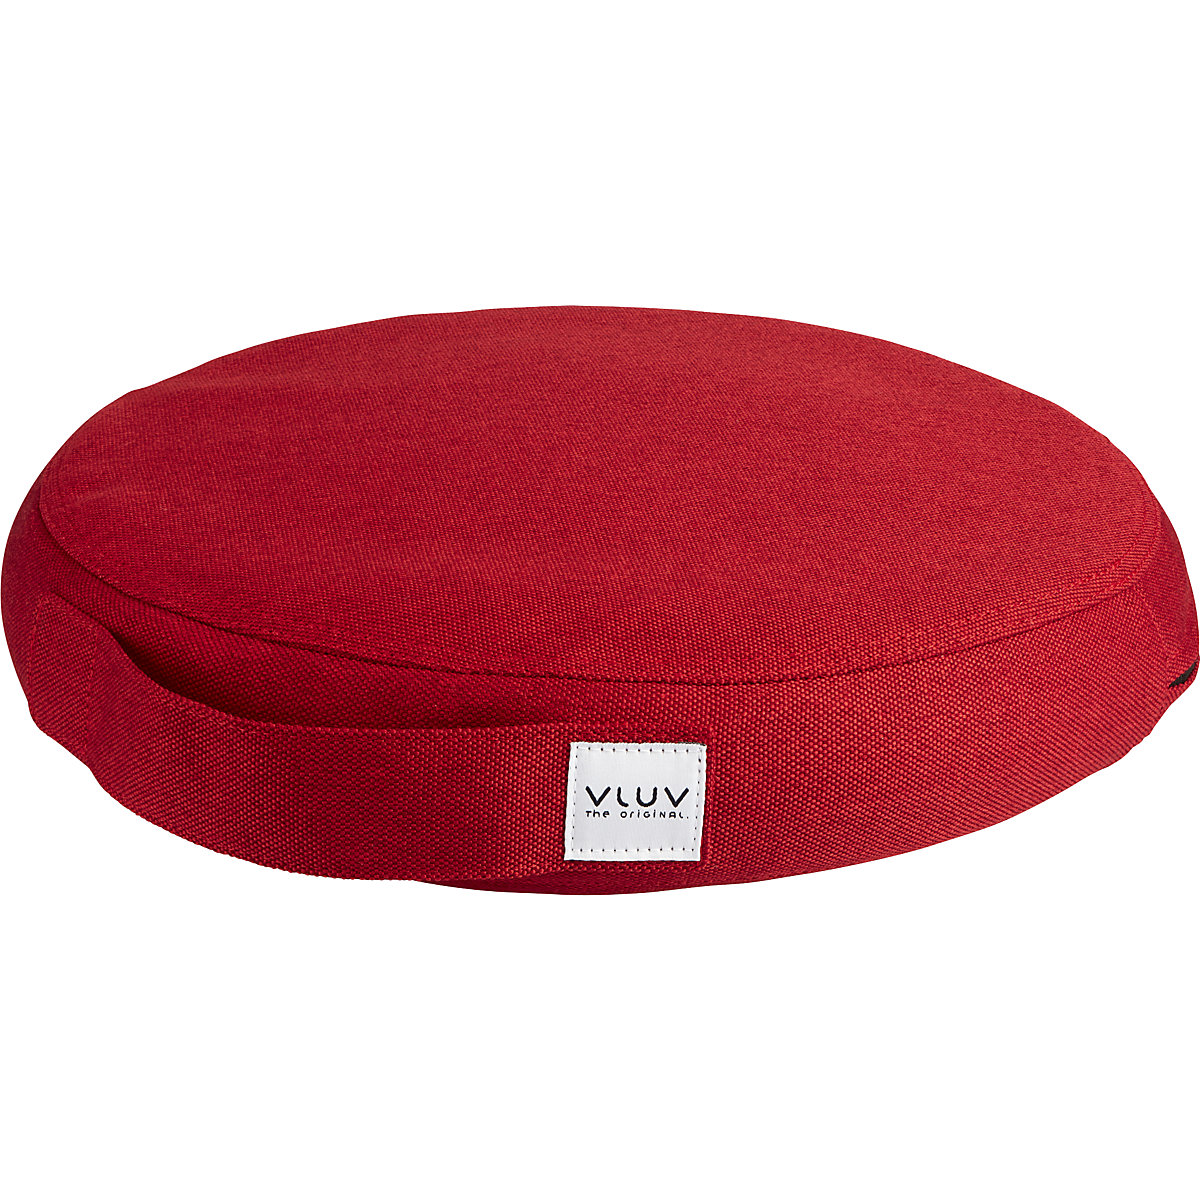 Cuscino per equilibrio PIL&PED LEIV – VLUV, con rivestimento in tessuto, Ø 360 mm, rosso rubino-8